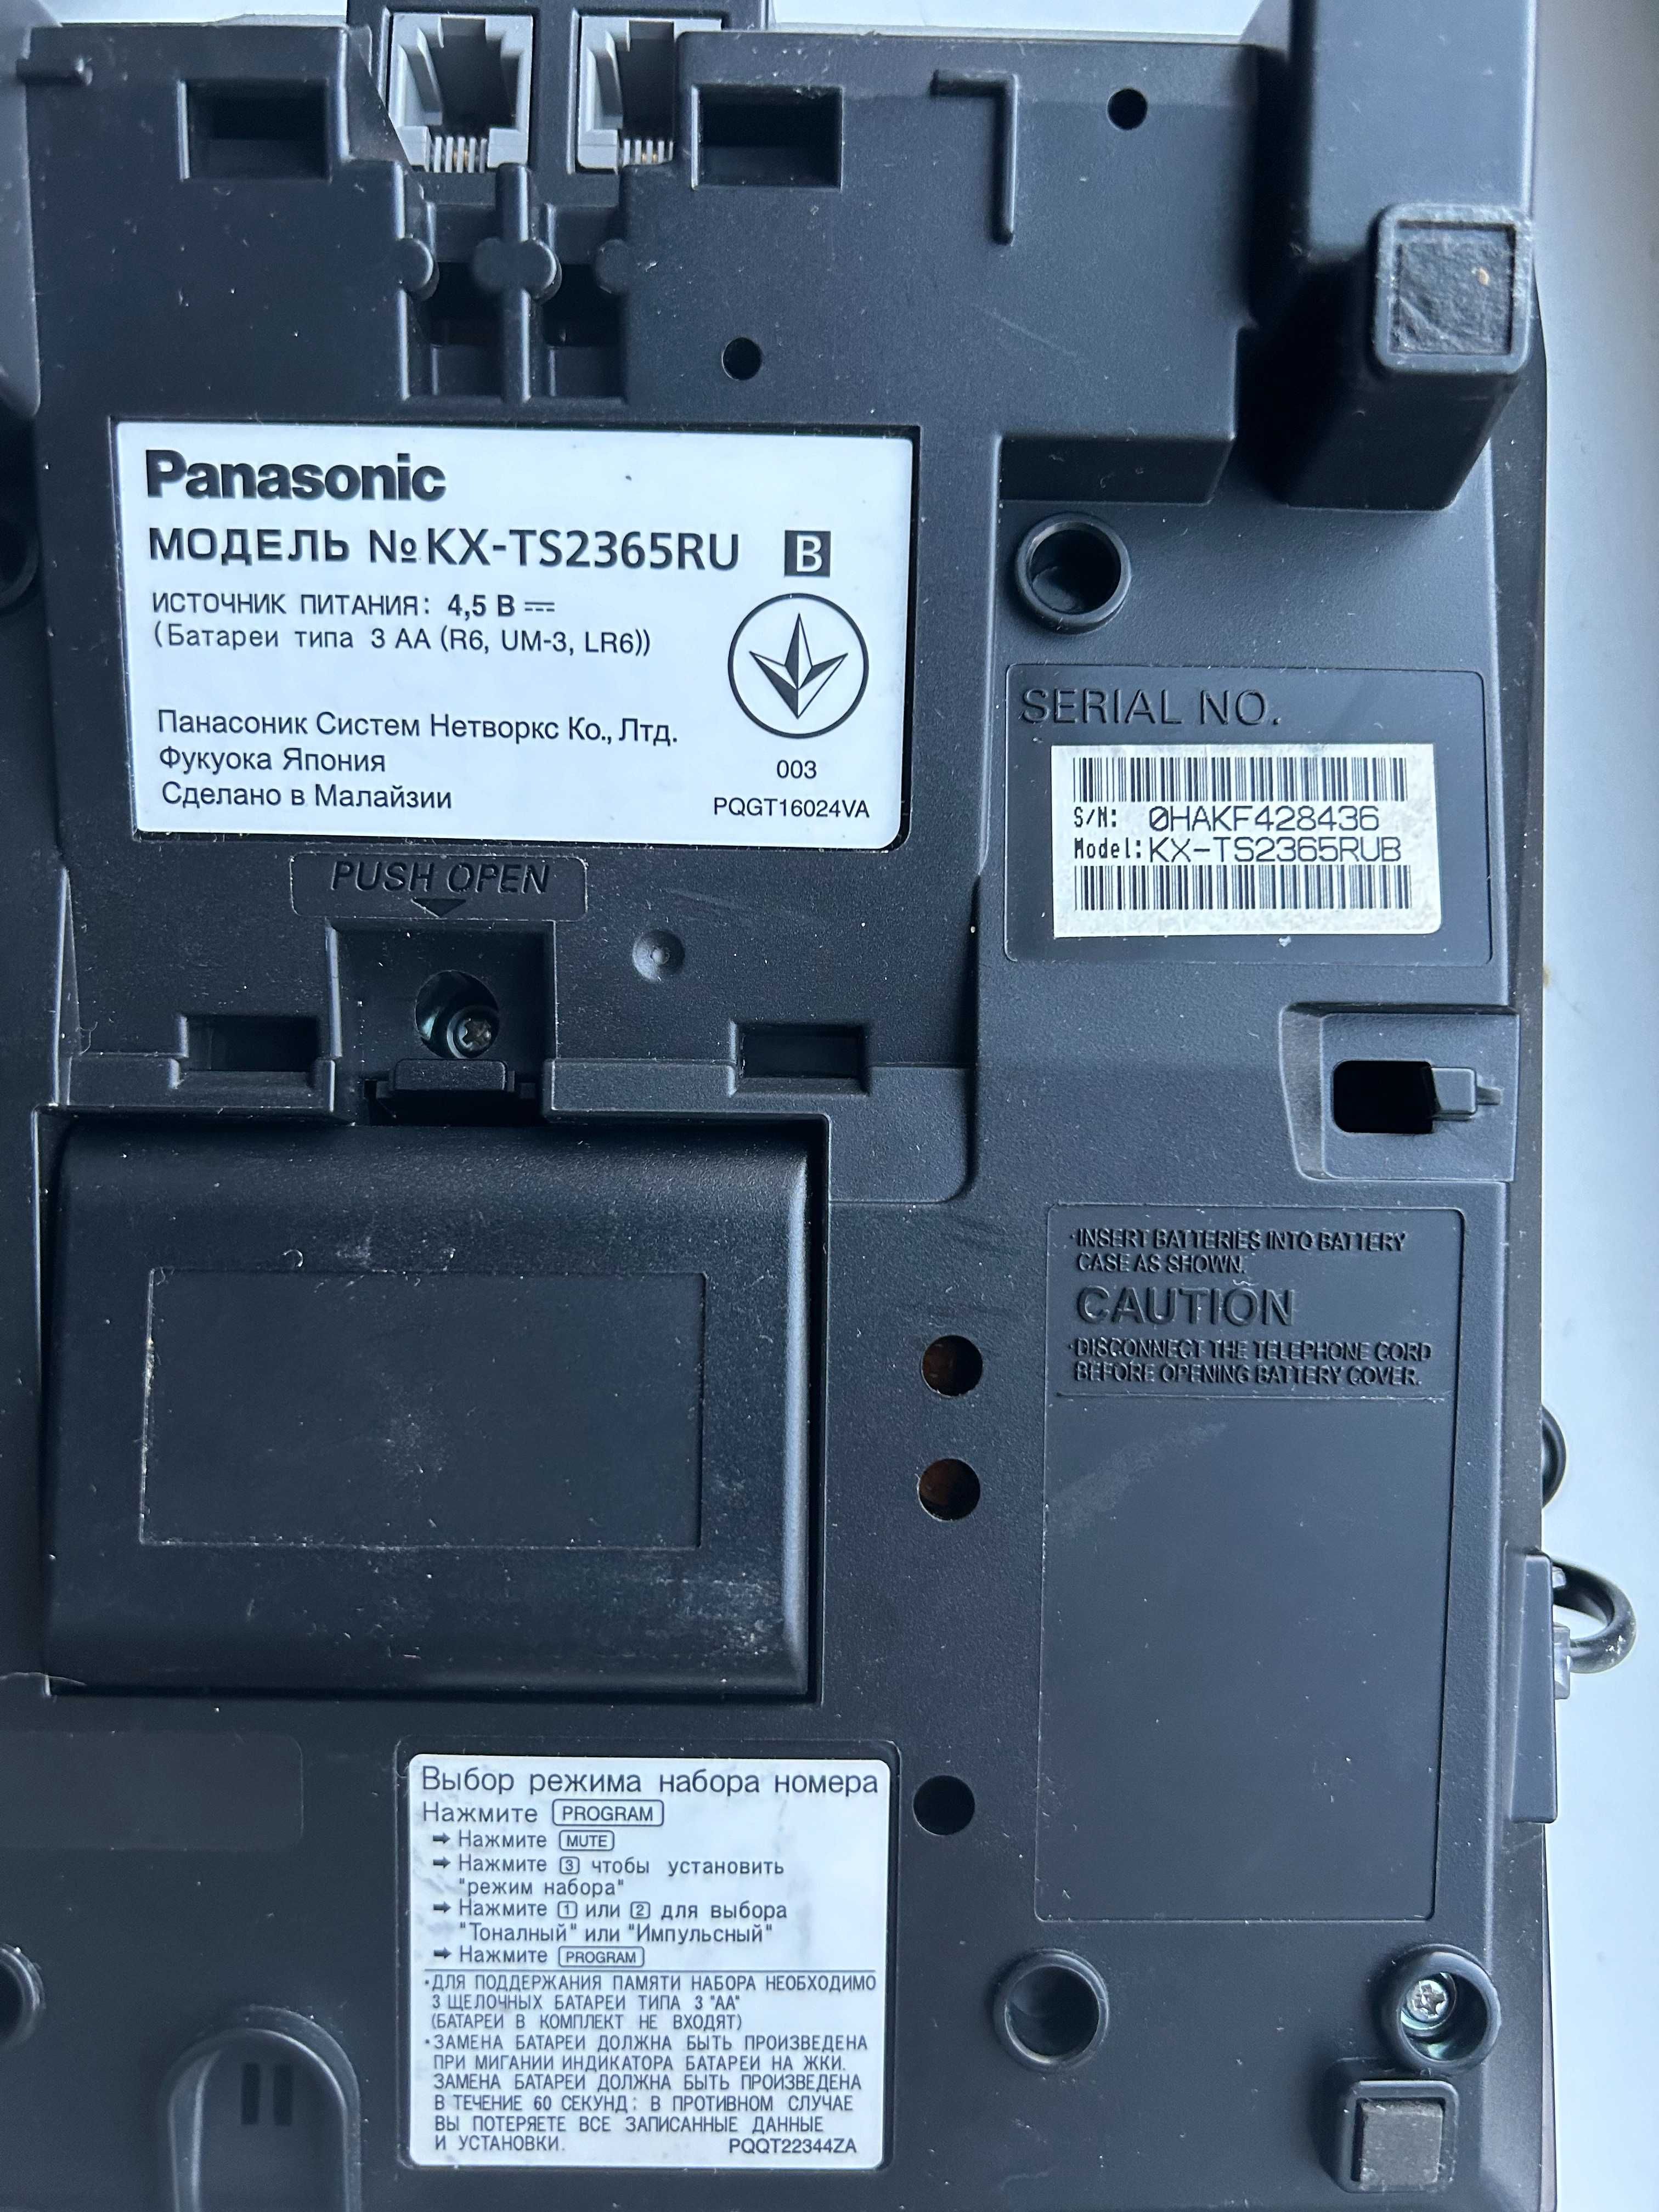 Panasonic KX-TS2365RU